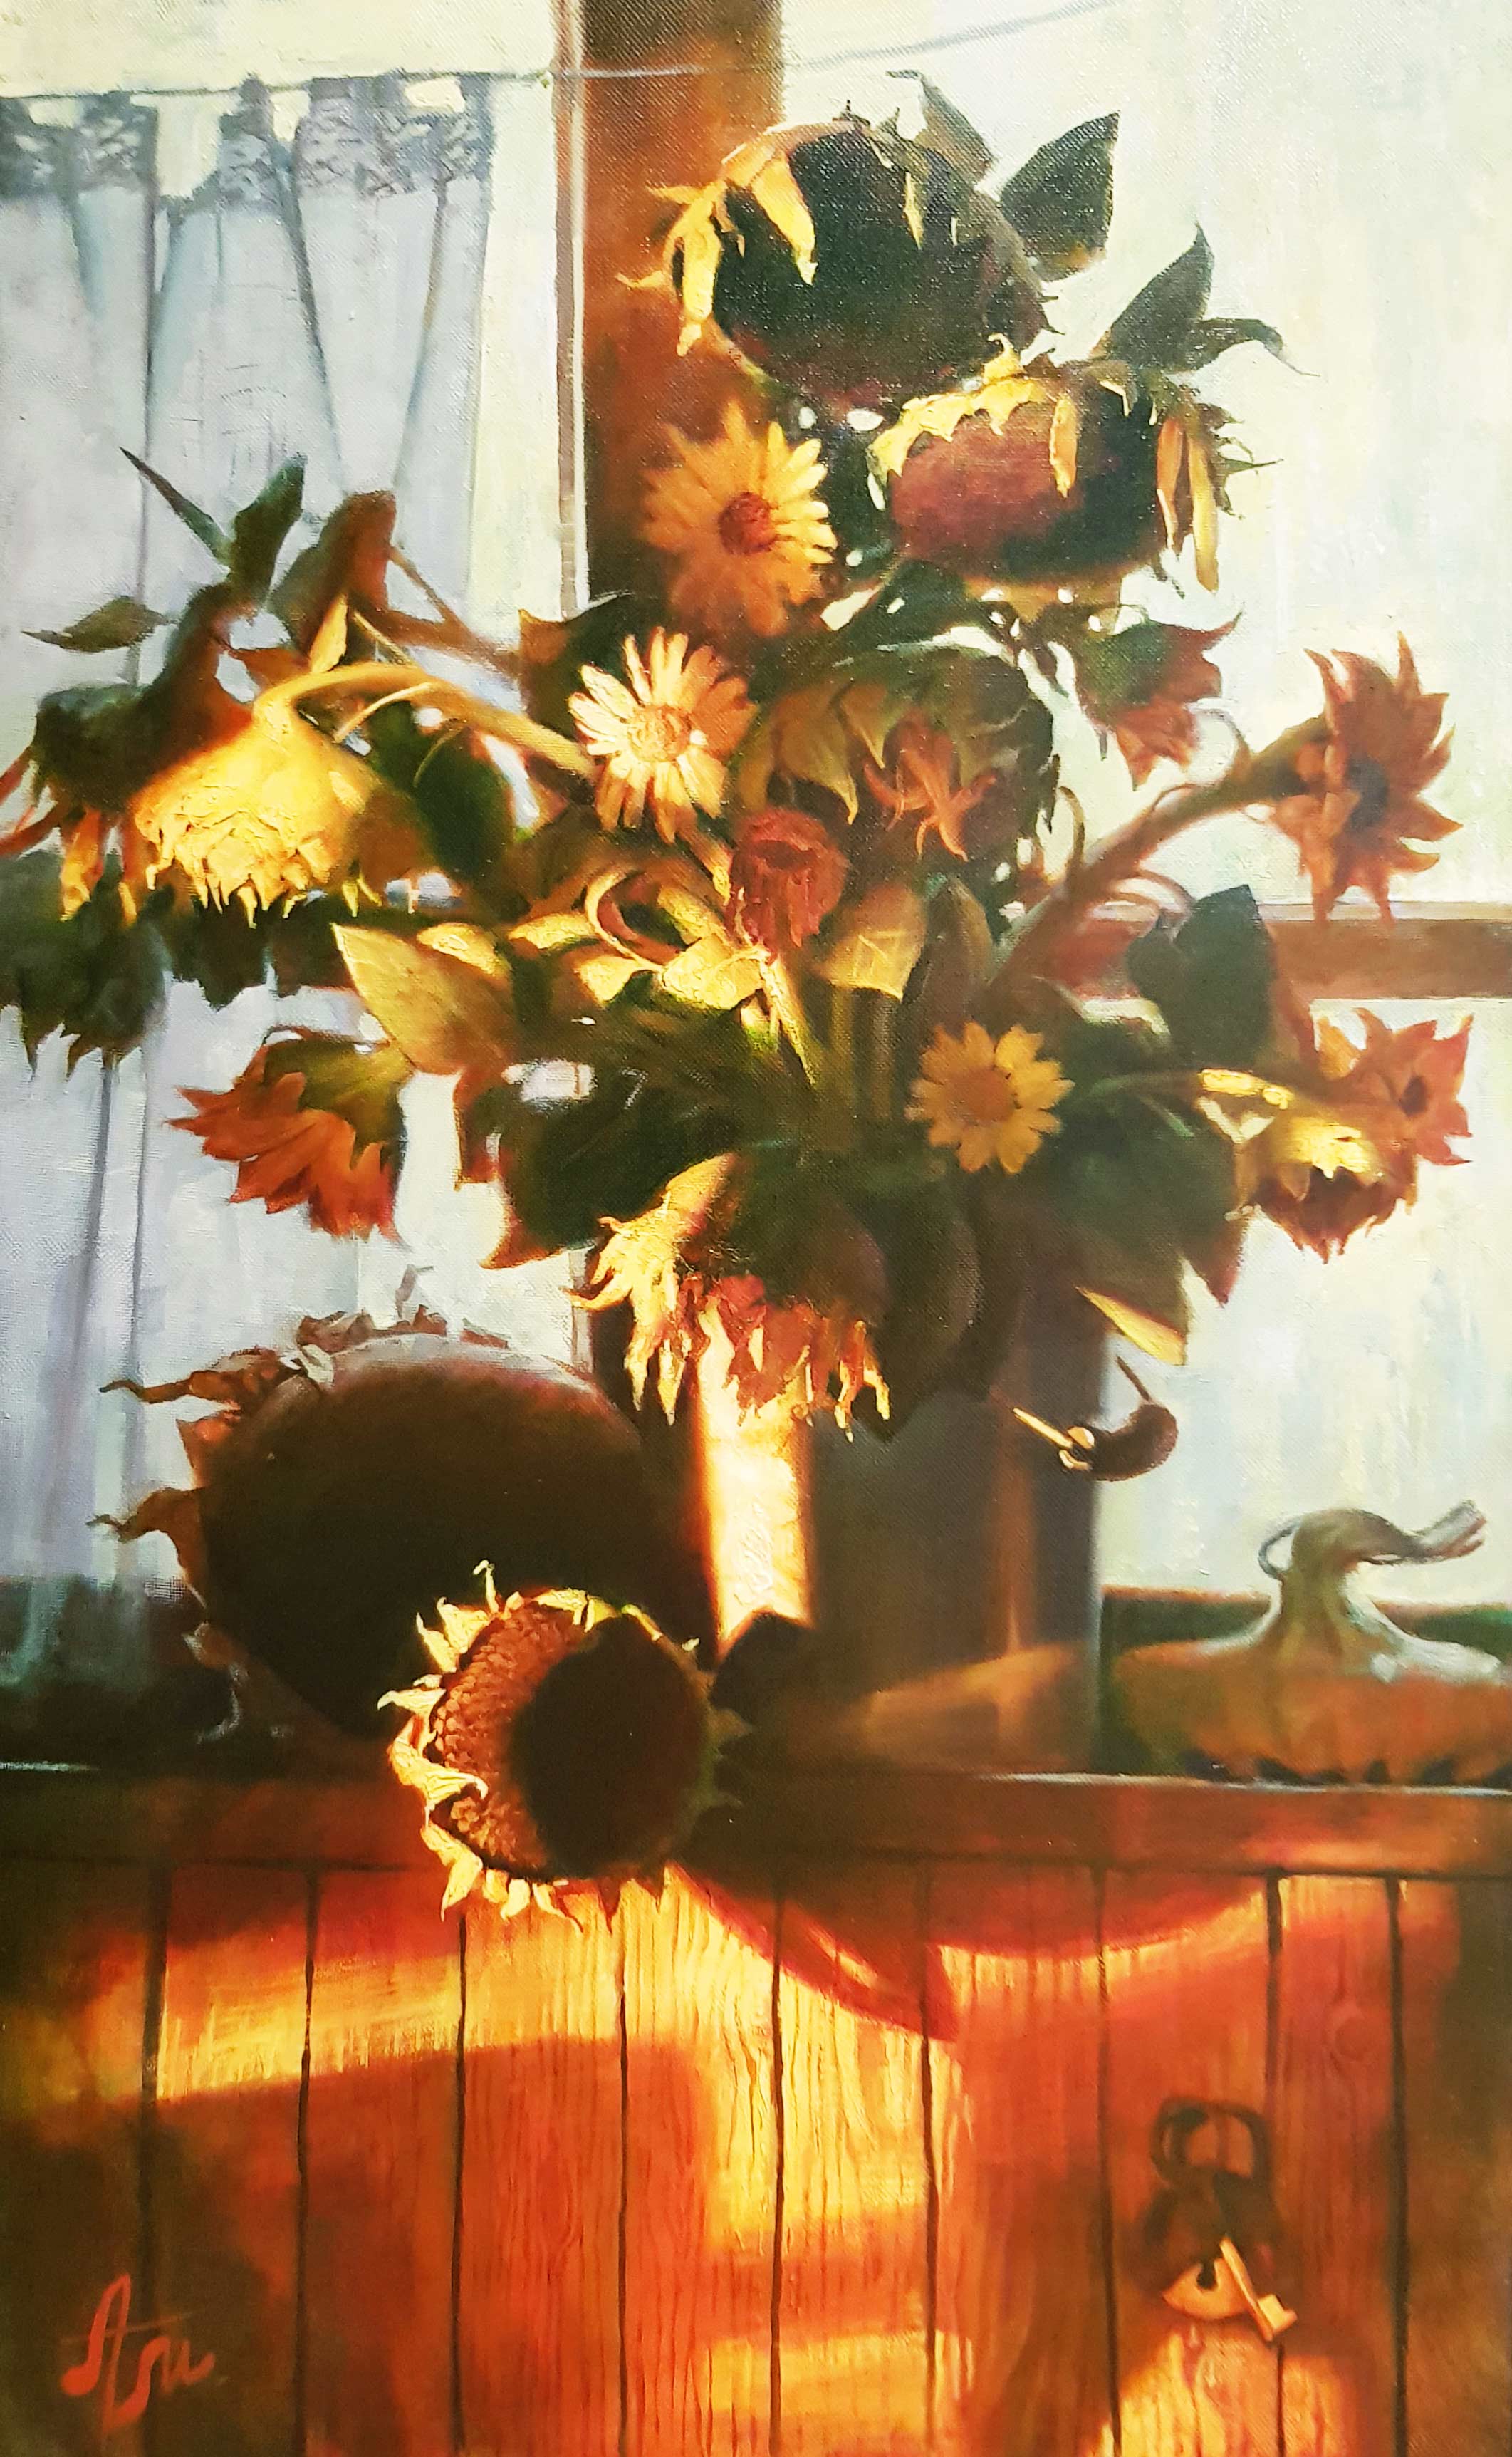 Sunflowers - 1, Anton Melentyev, Buy the painting Oil